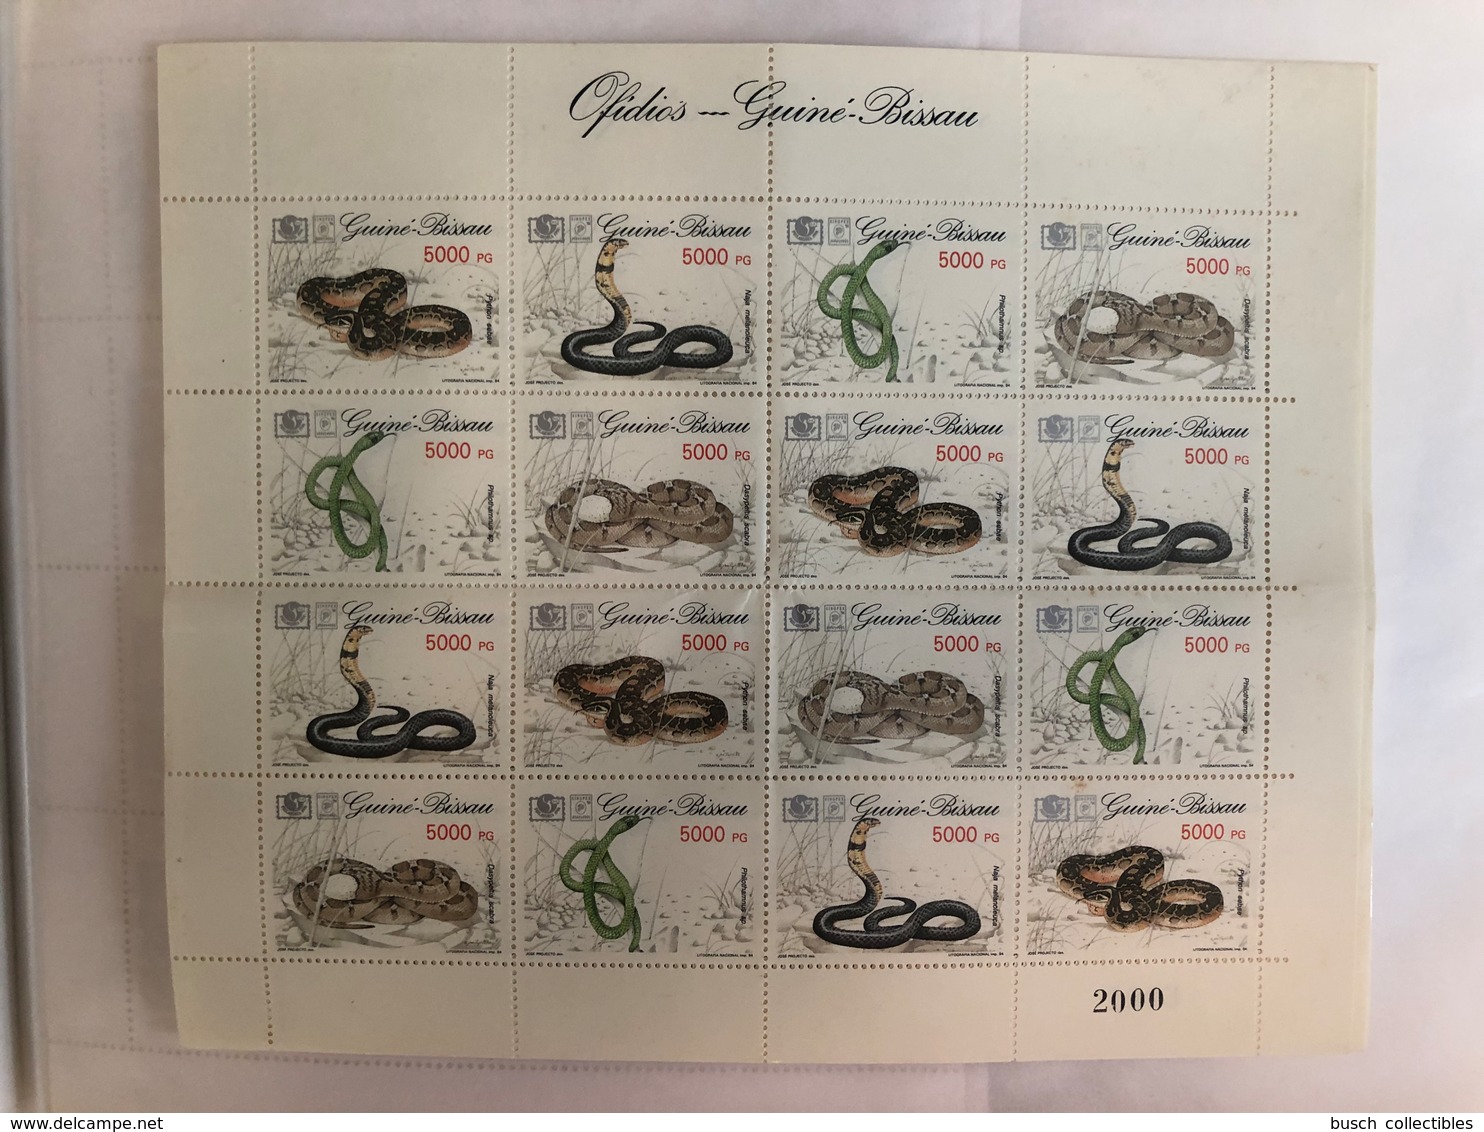 Guiné-Bissau Guinea Guinée 1994 Mi. 1211-1214 Serpents Snakes Schlangen Reptiles Reptilien MNH** - Serpents